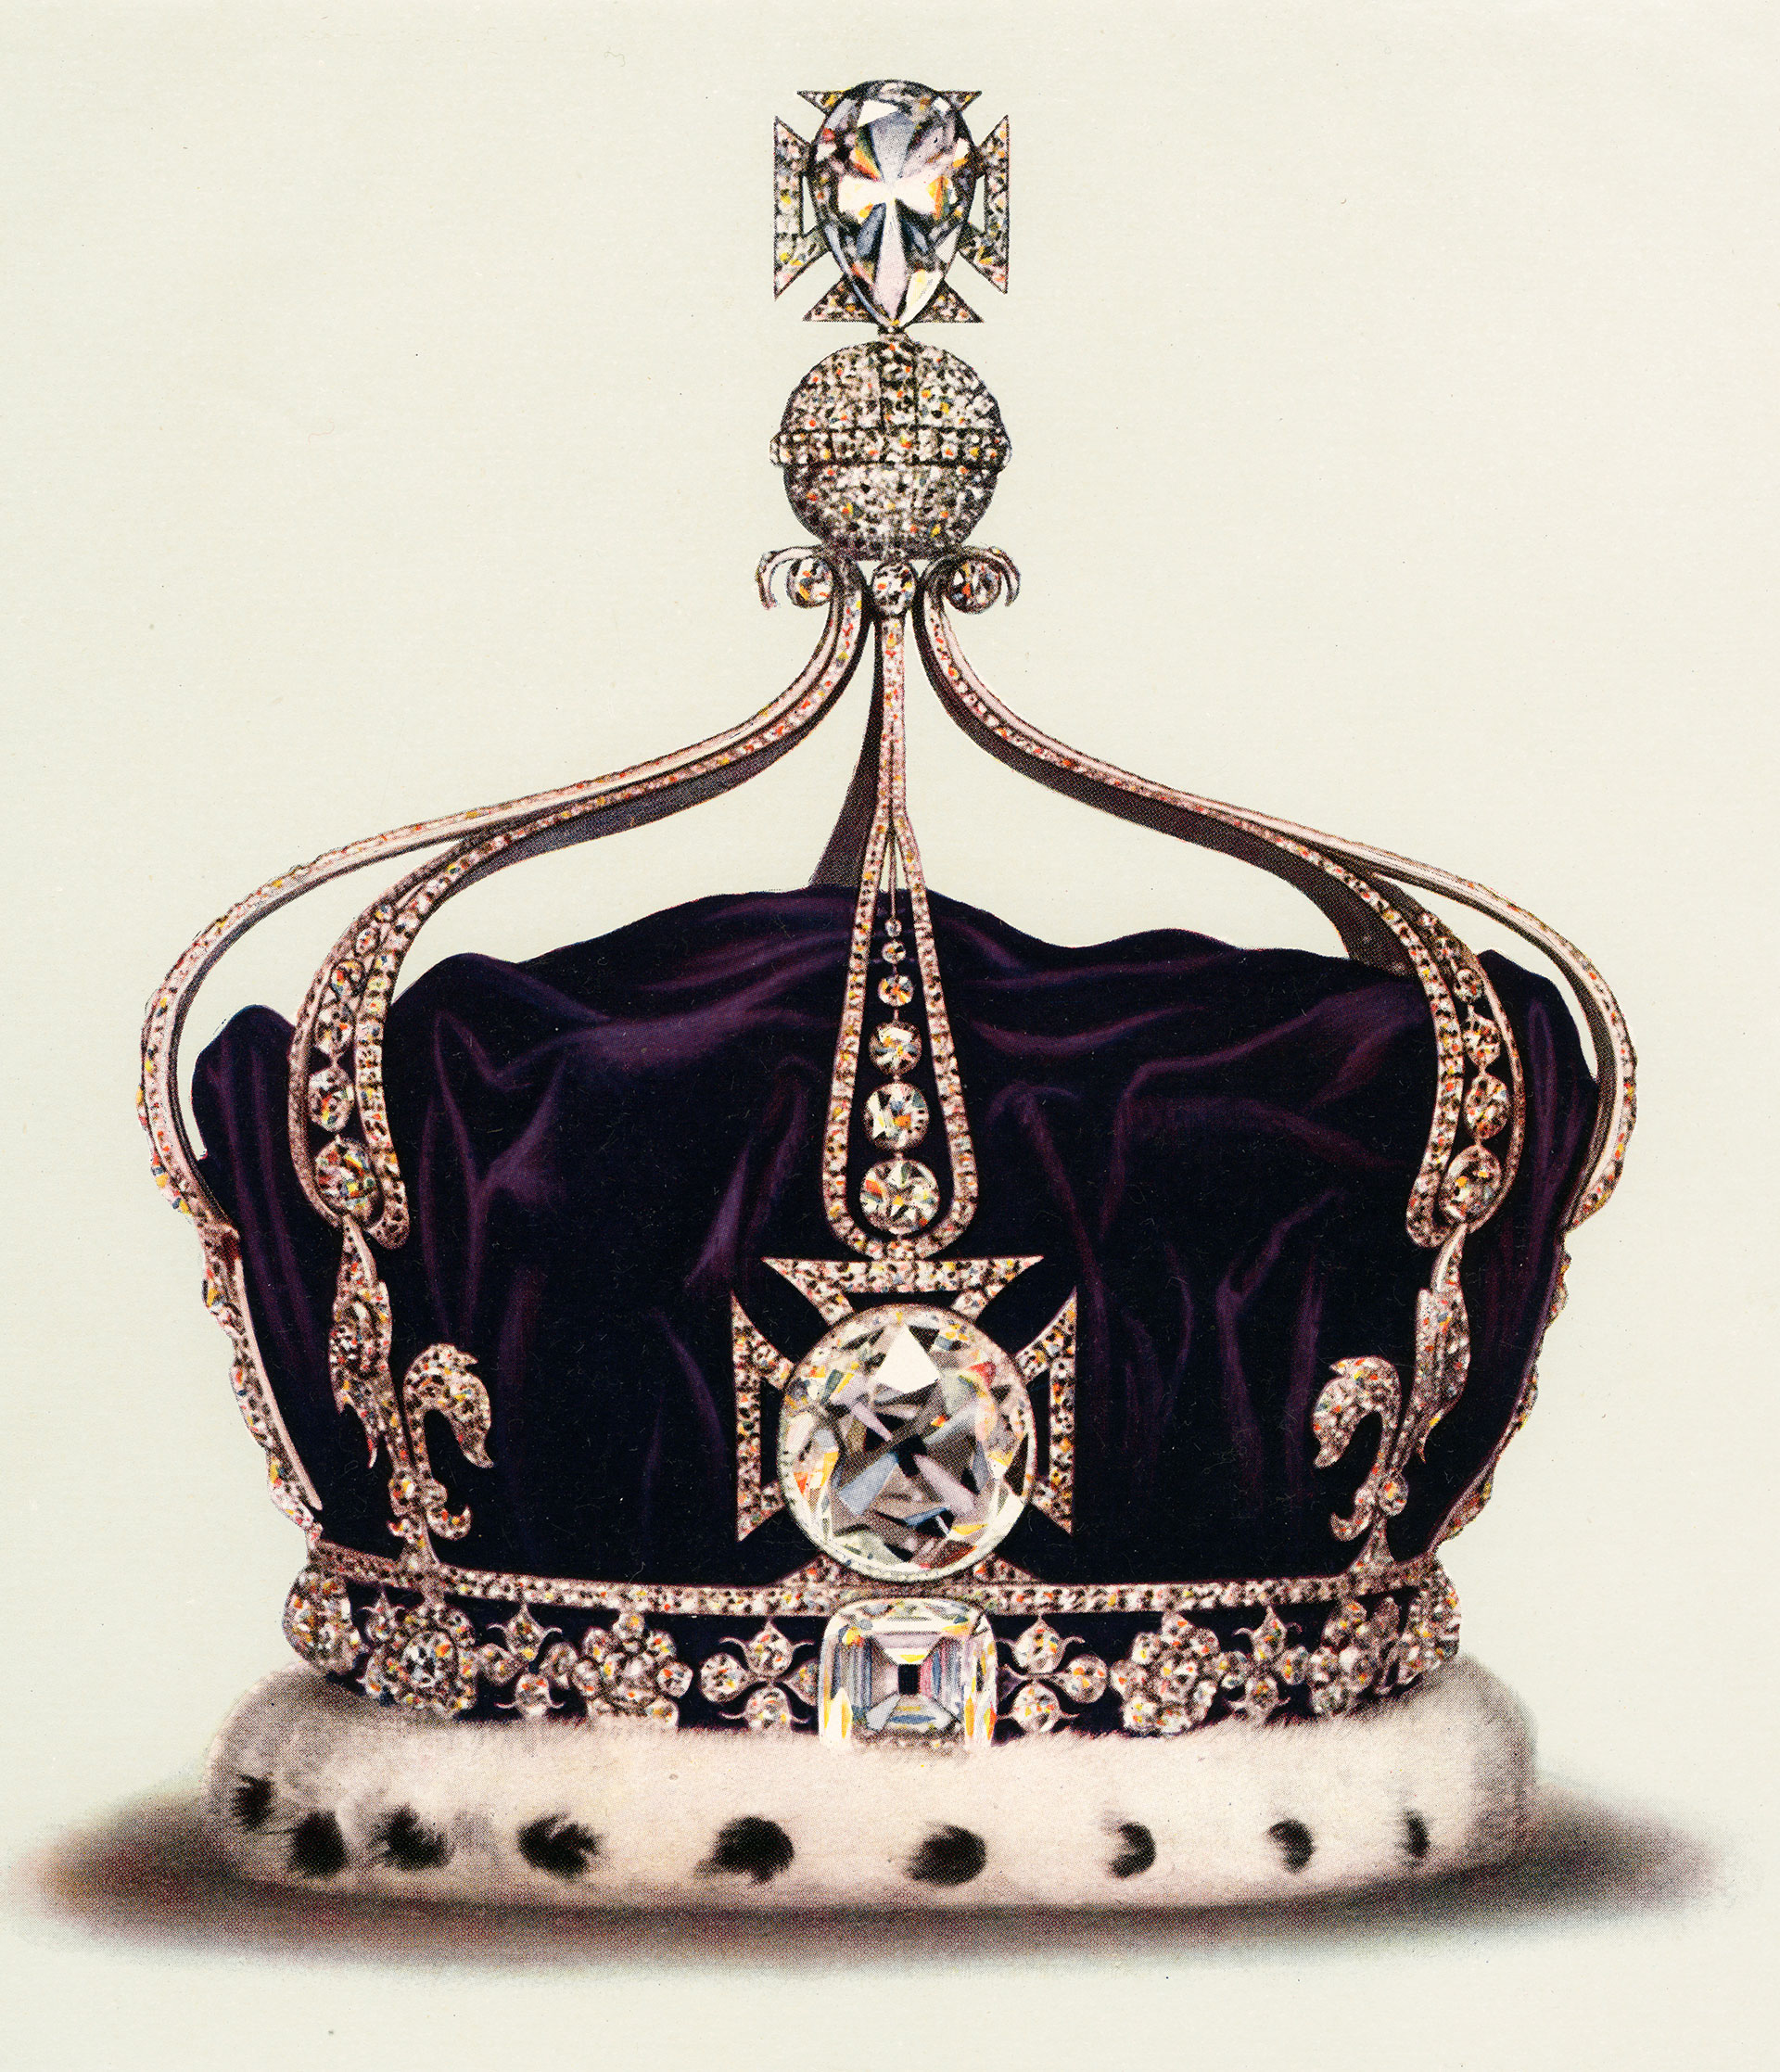 La corona que lucirá la reina consorte fue construida por los joyeros reales Garrard's en 1911 por encargo por la reina María (1867-1953), siguiendo una tradición que permitía a cada nueva reina consorte disponer de una nueva corona (Getty Images)